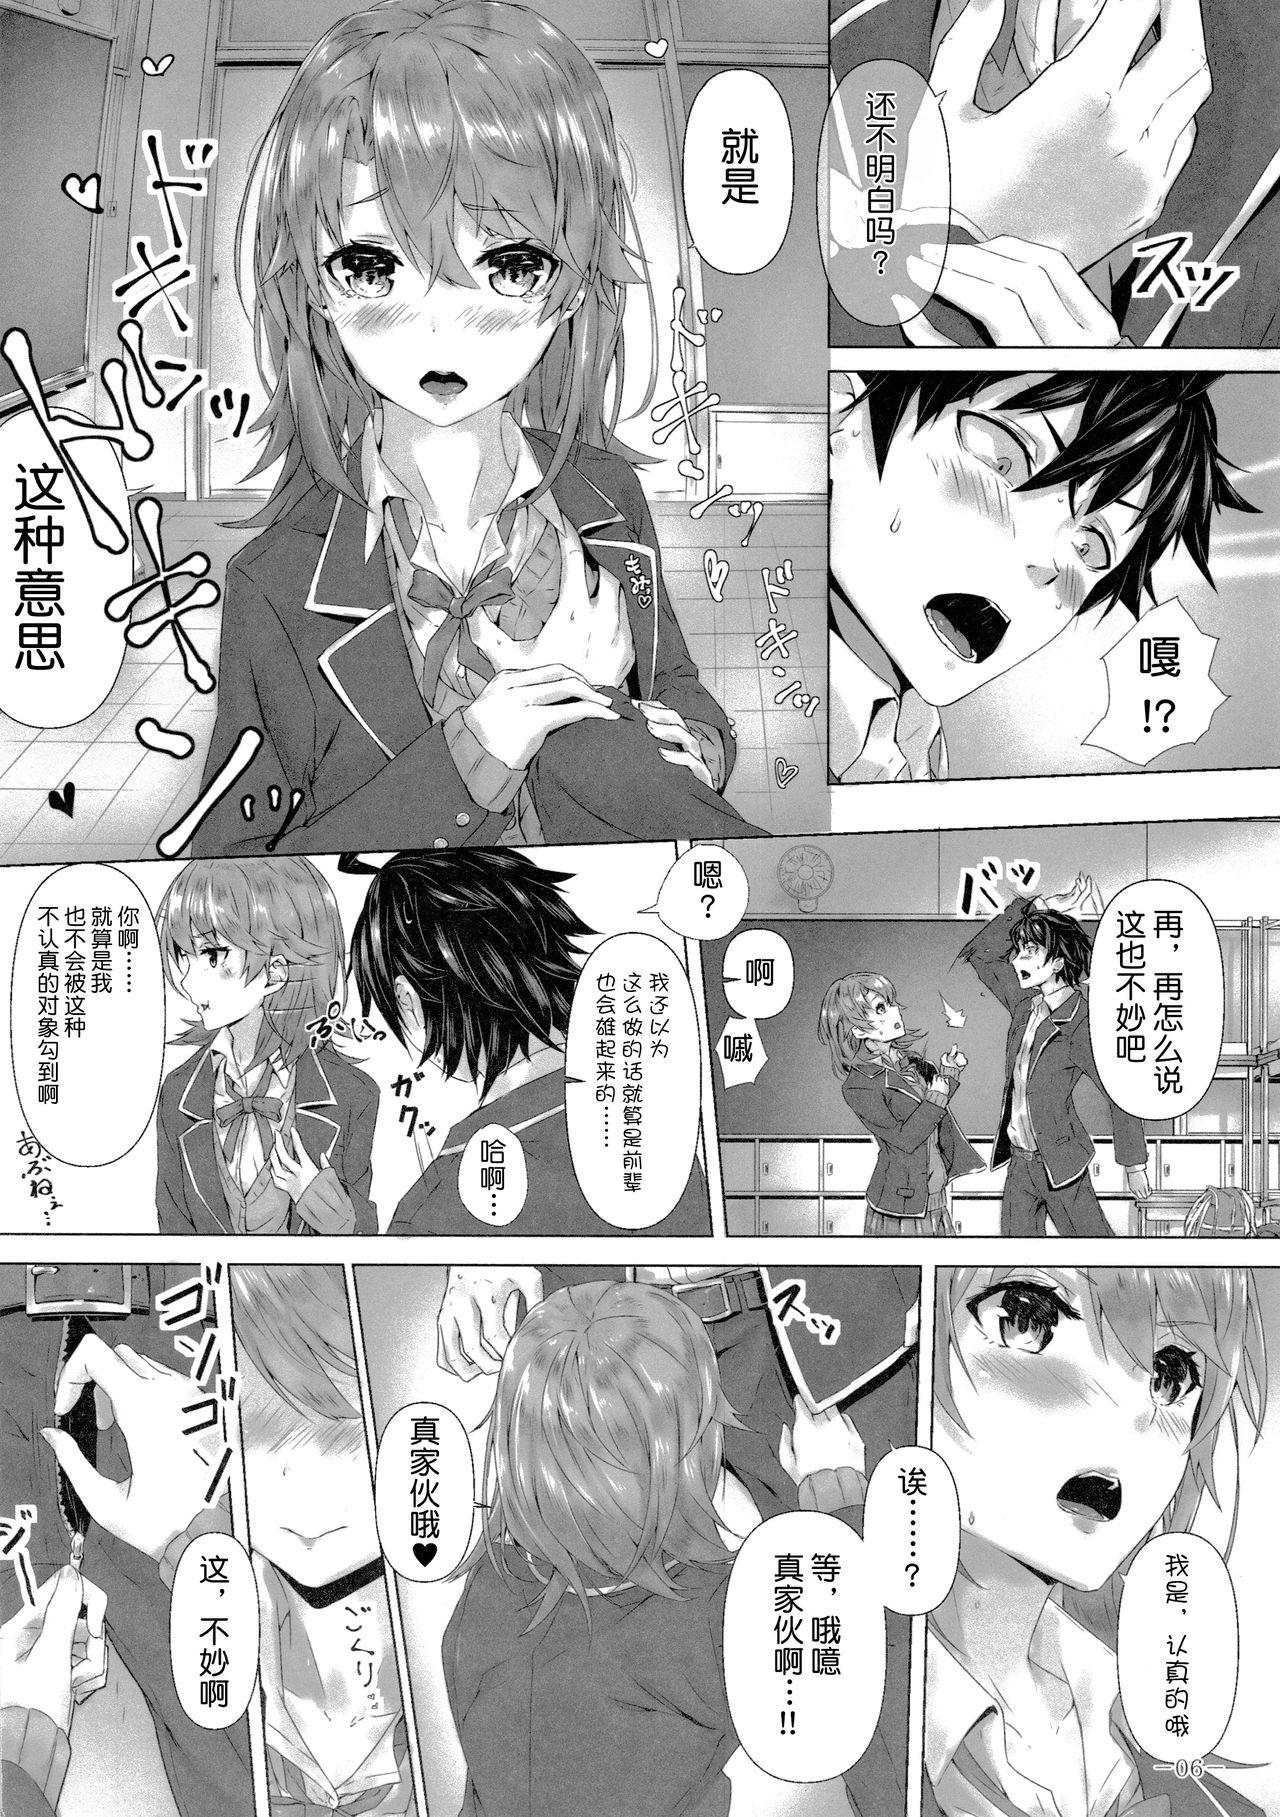 Bikini Kitto, Isshiki Iroha wa… - Yahari ore no seishun love come wa machigatteiru Shy - Page 7